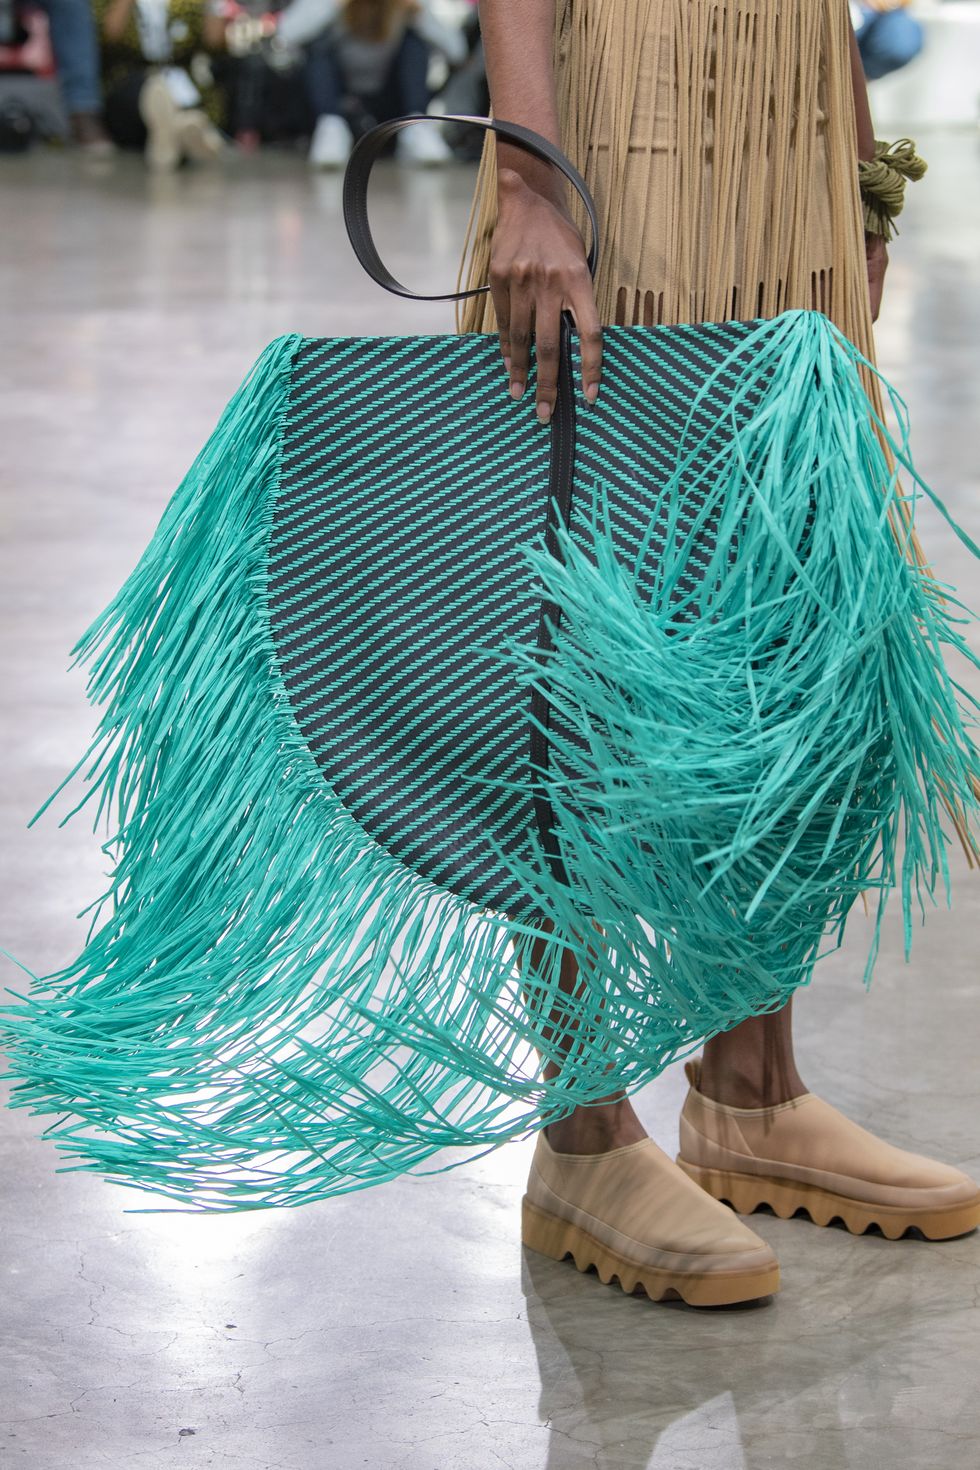 fringe bag - fringe fashion 2019